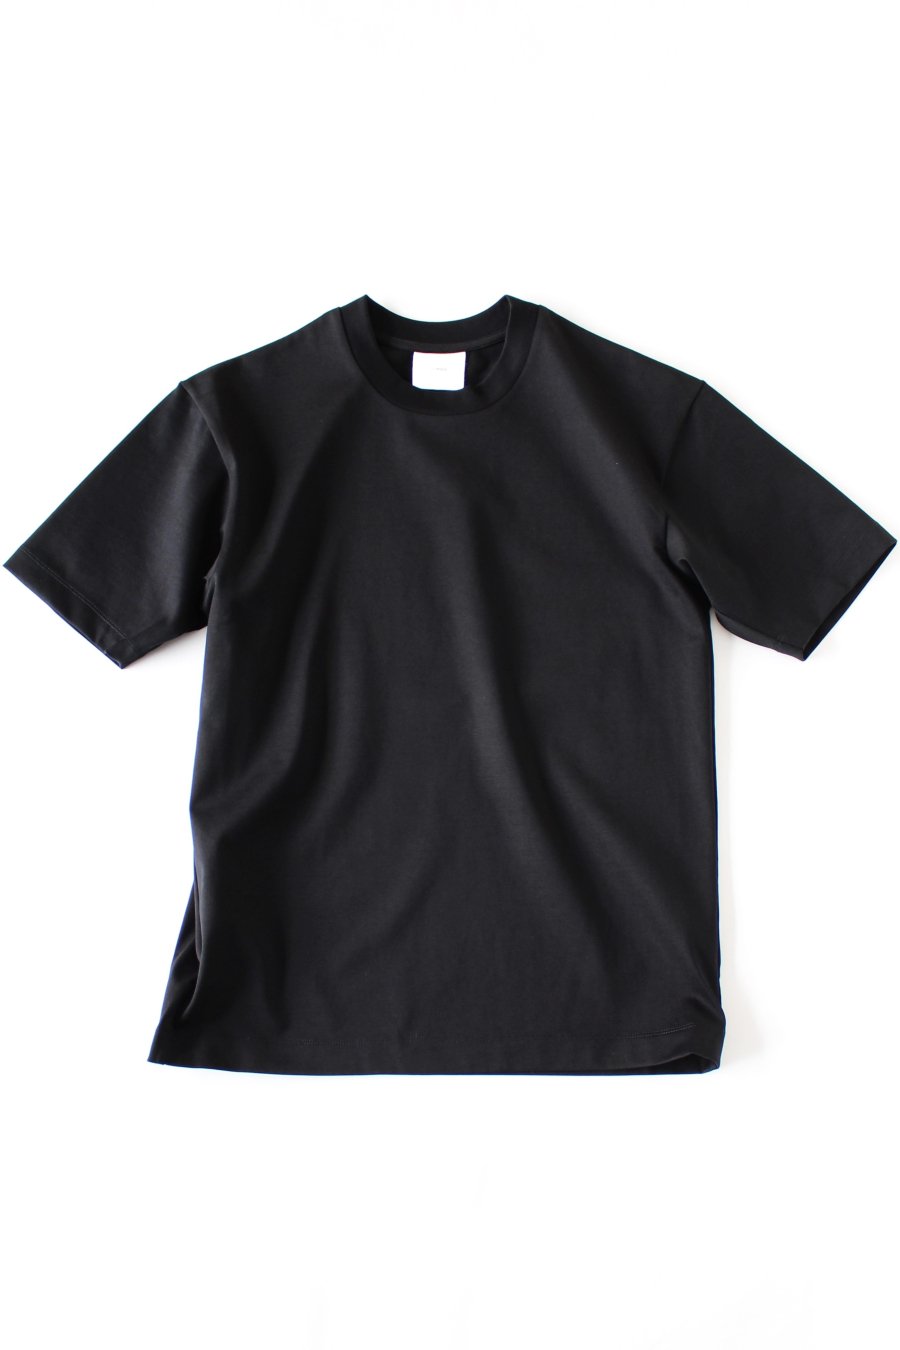 CINOH<span> mens</span><br />ベーシックTシャツ黒